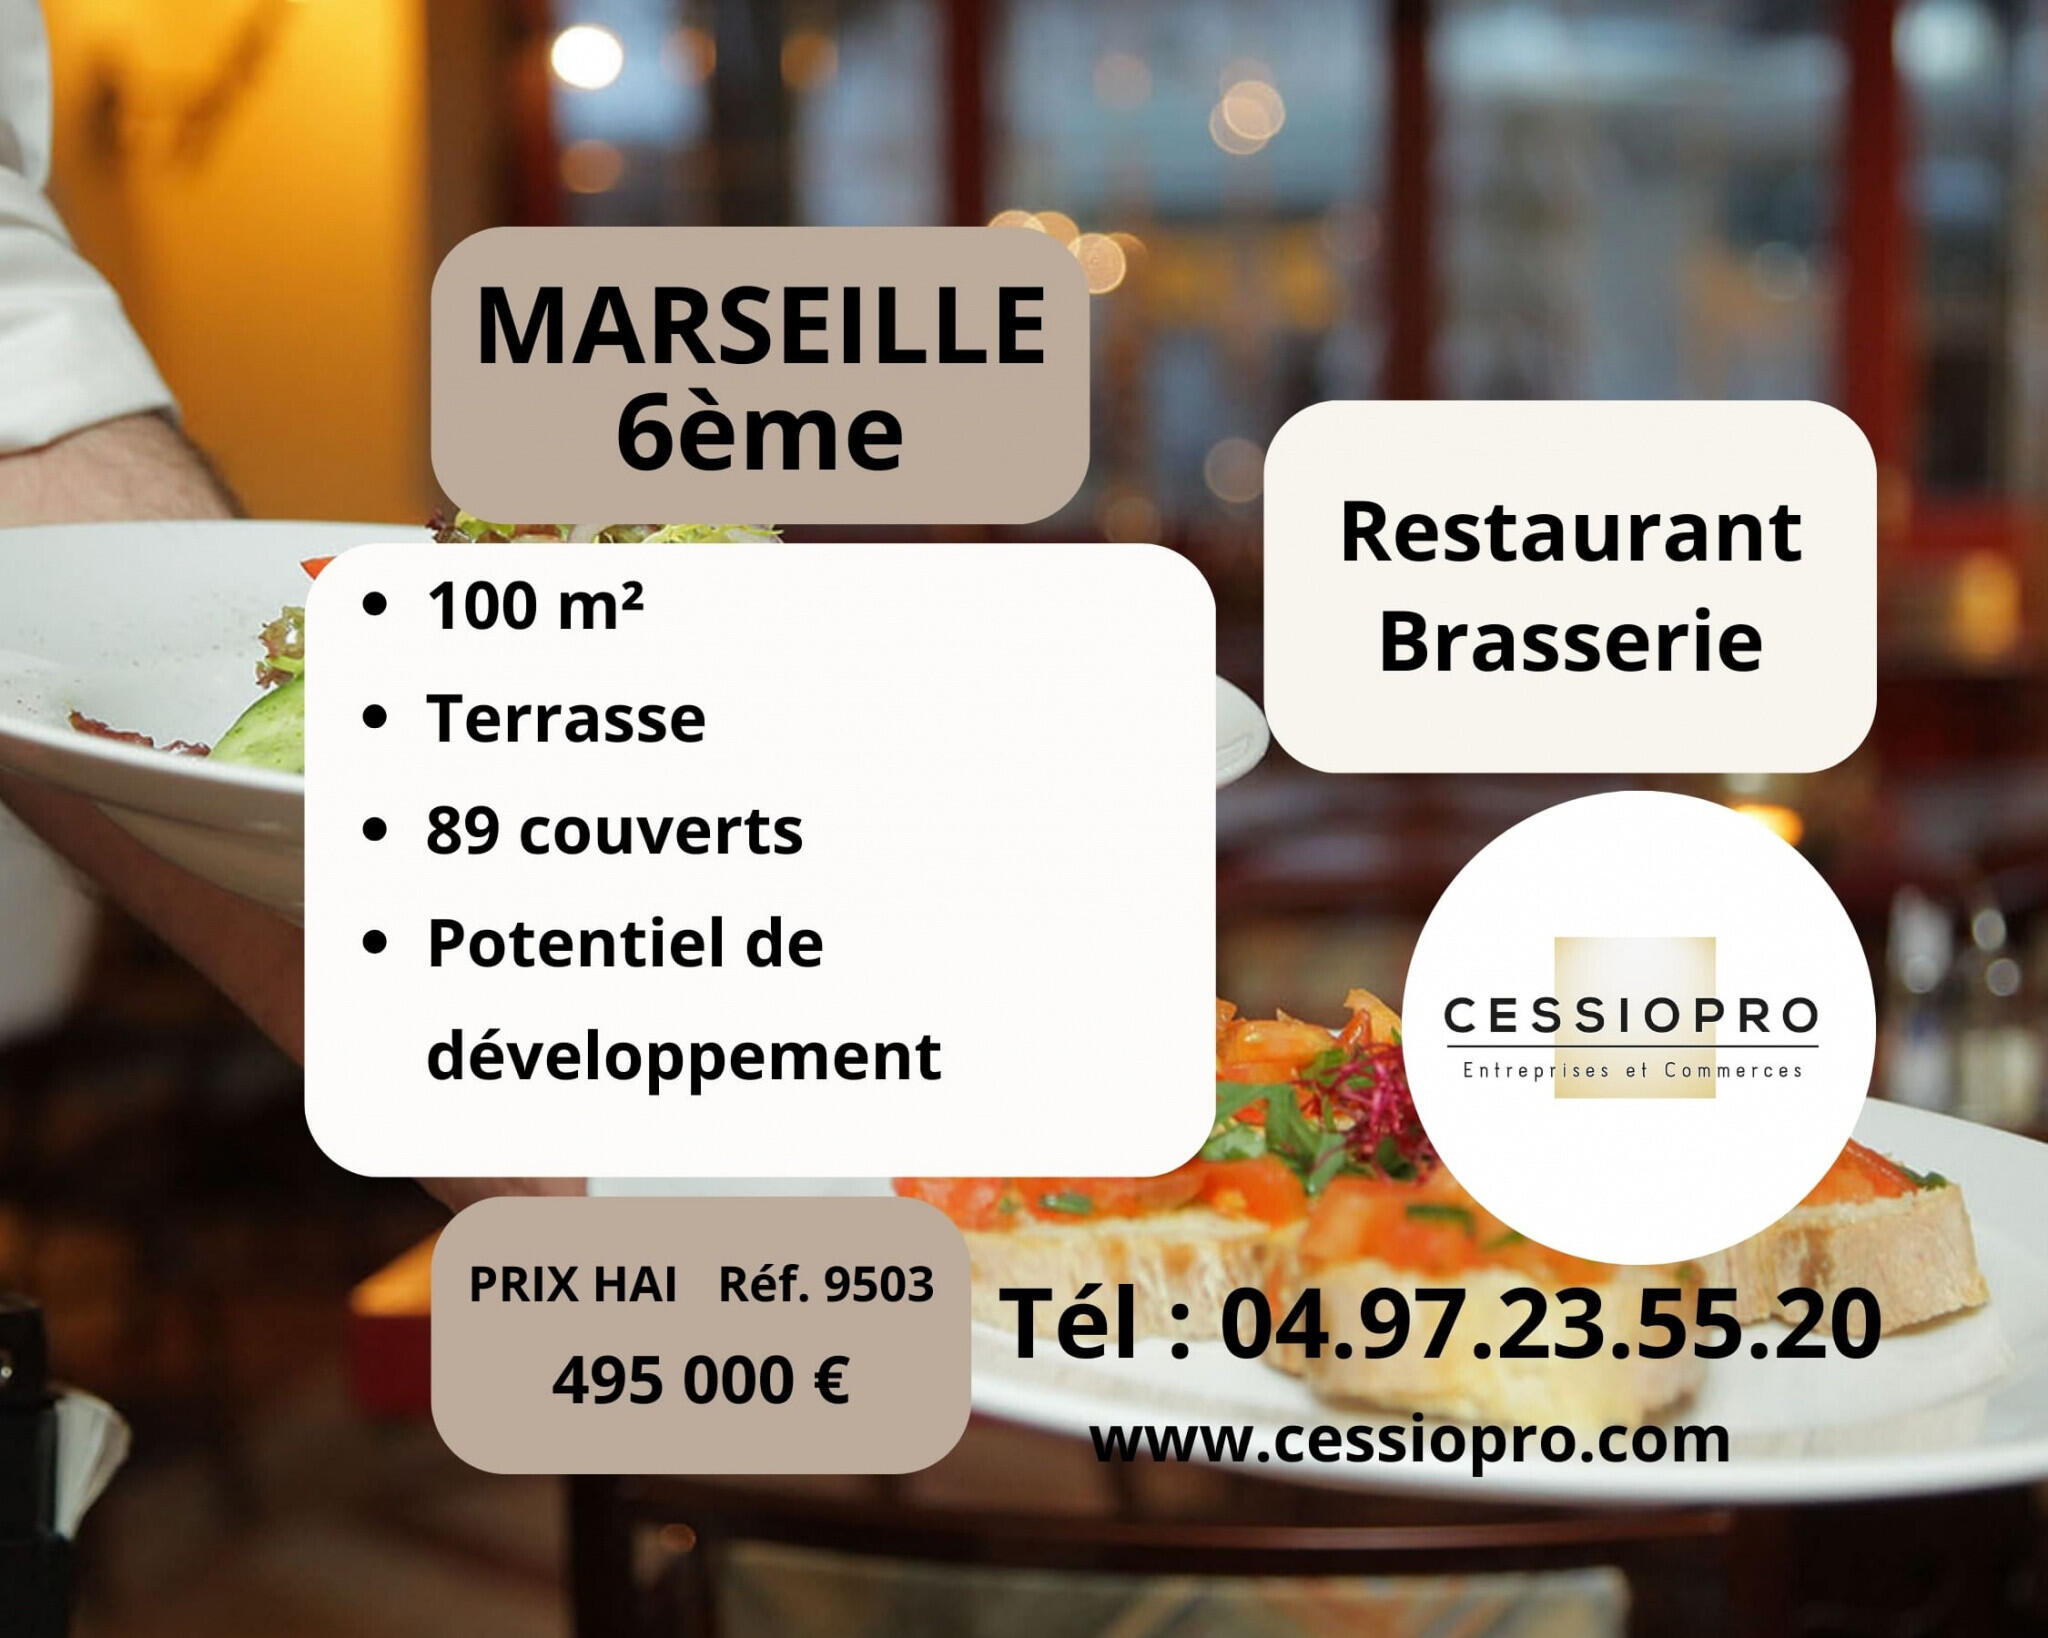 Vente restaurant brasserie terrasse à Marseille